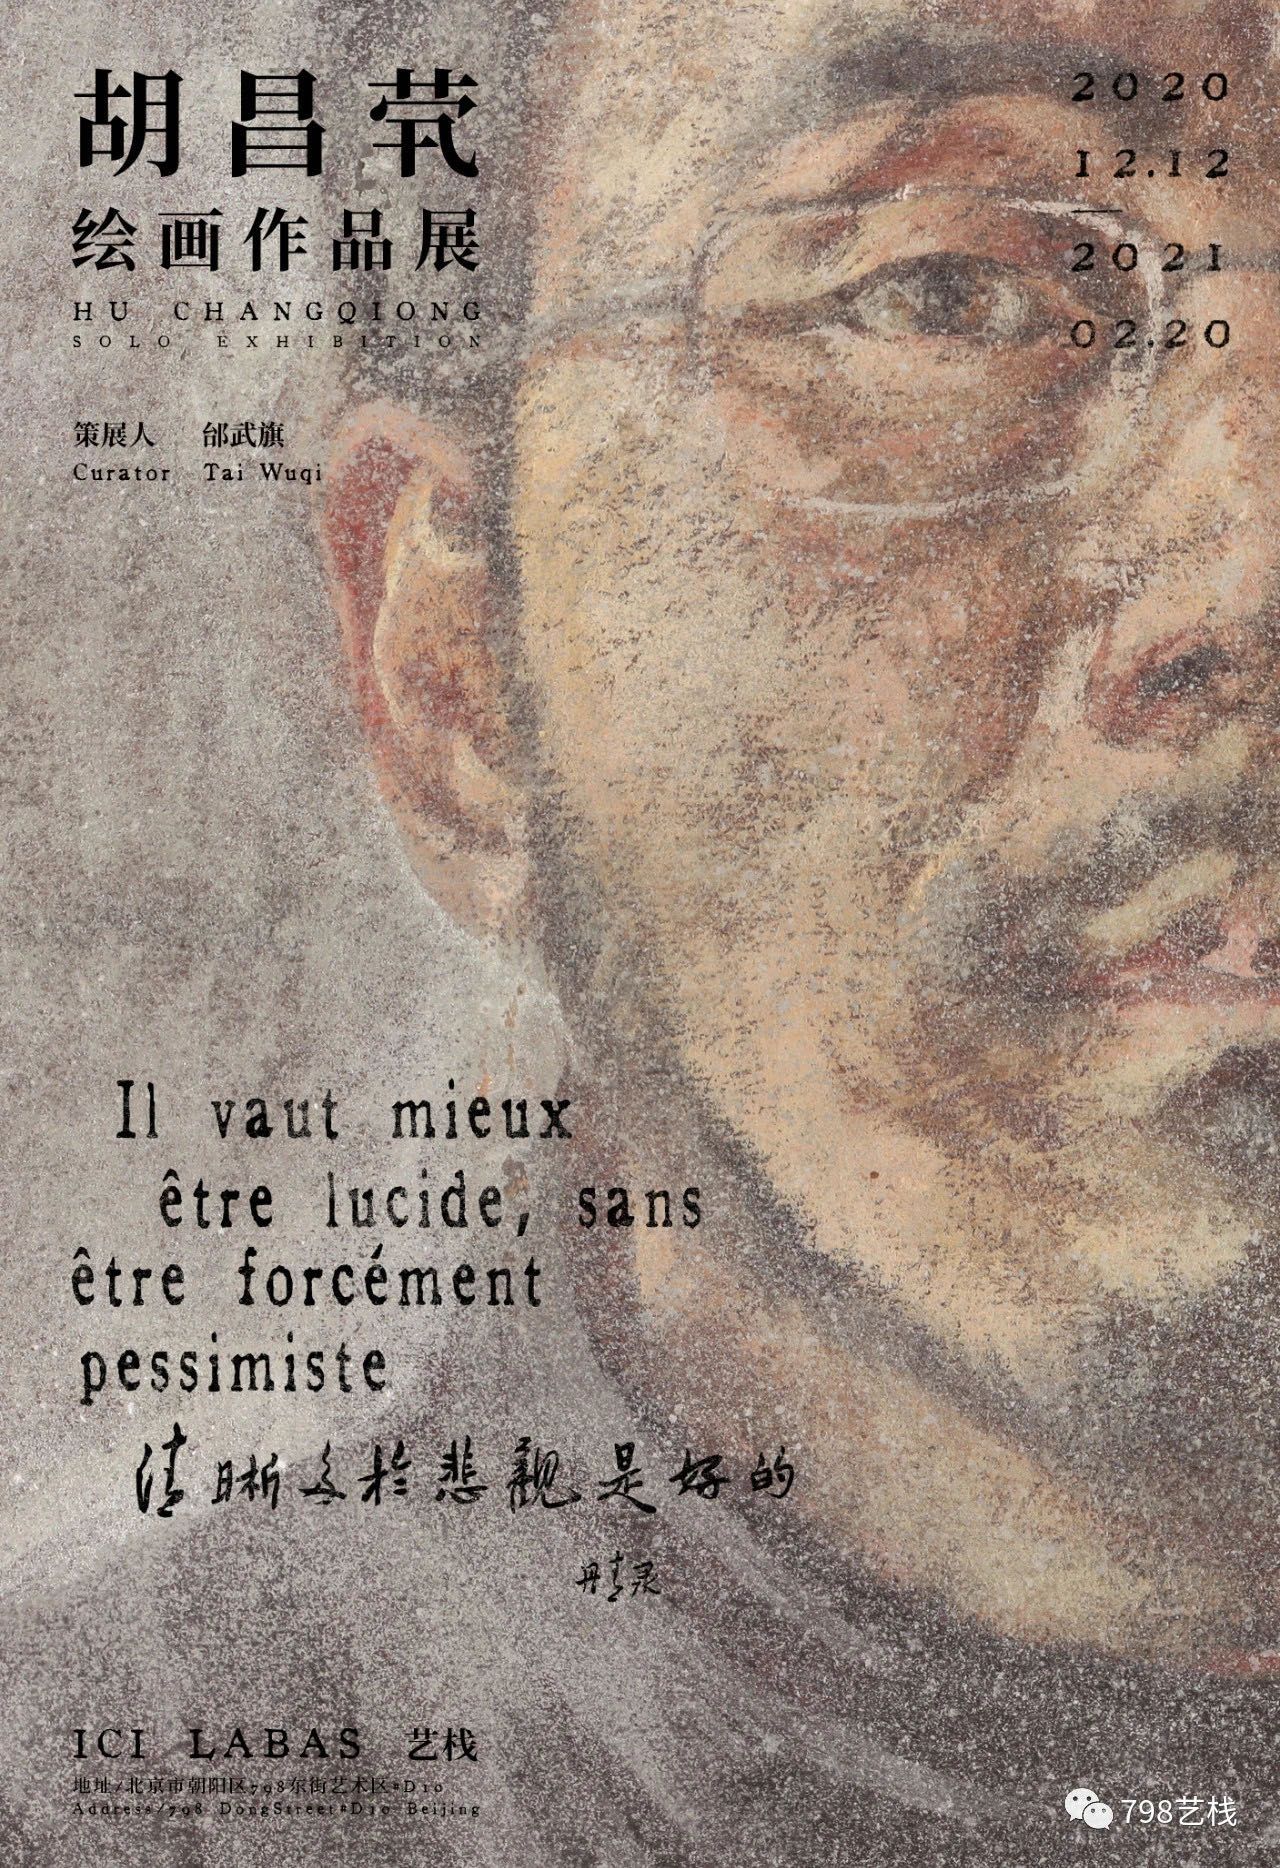 “清晰多于悲观是好的”胡昌茕绘画作品展